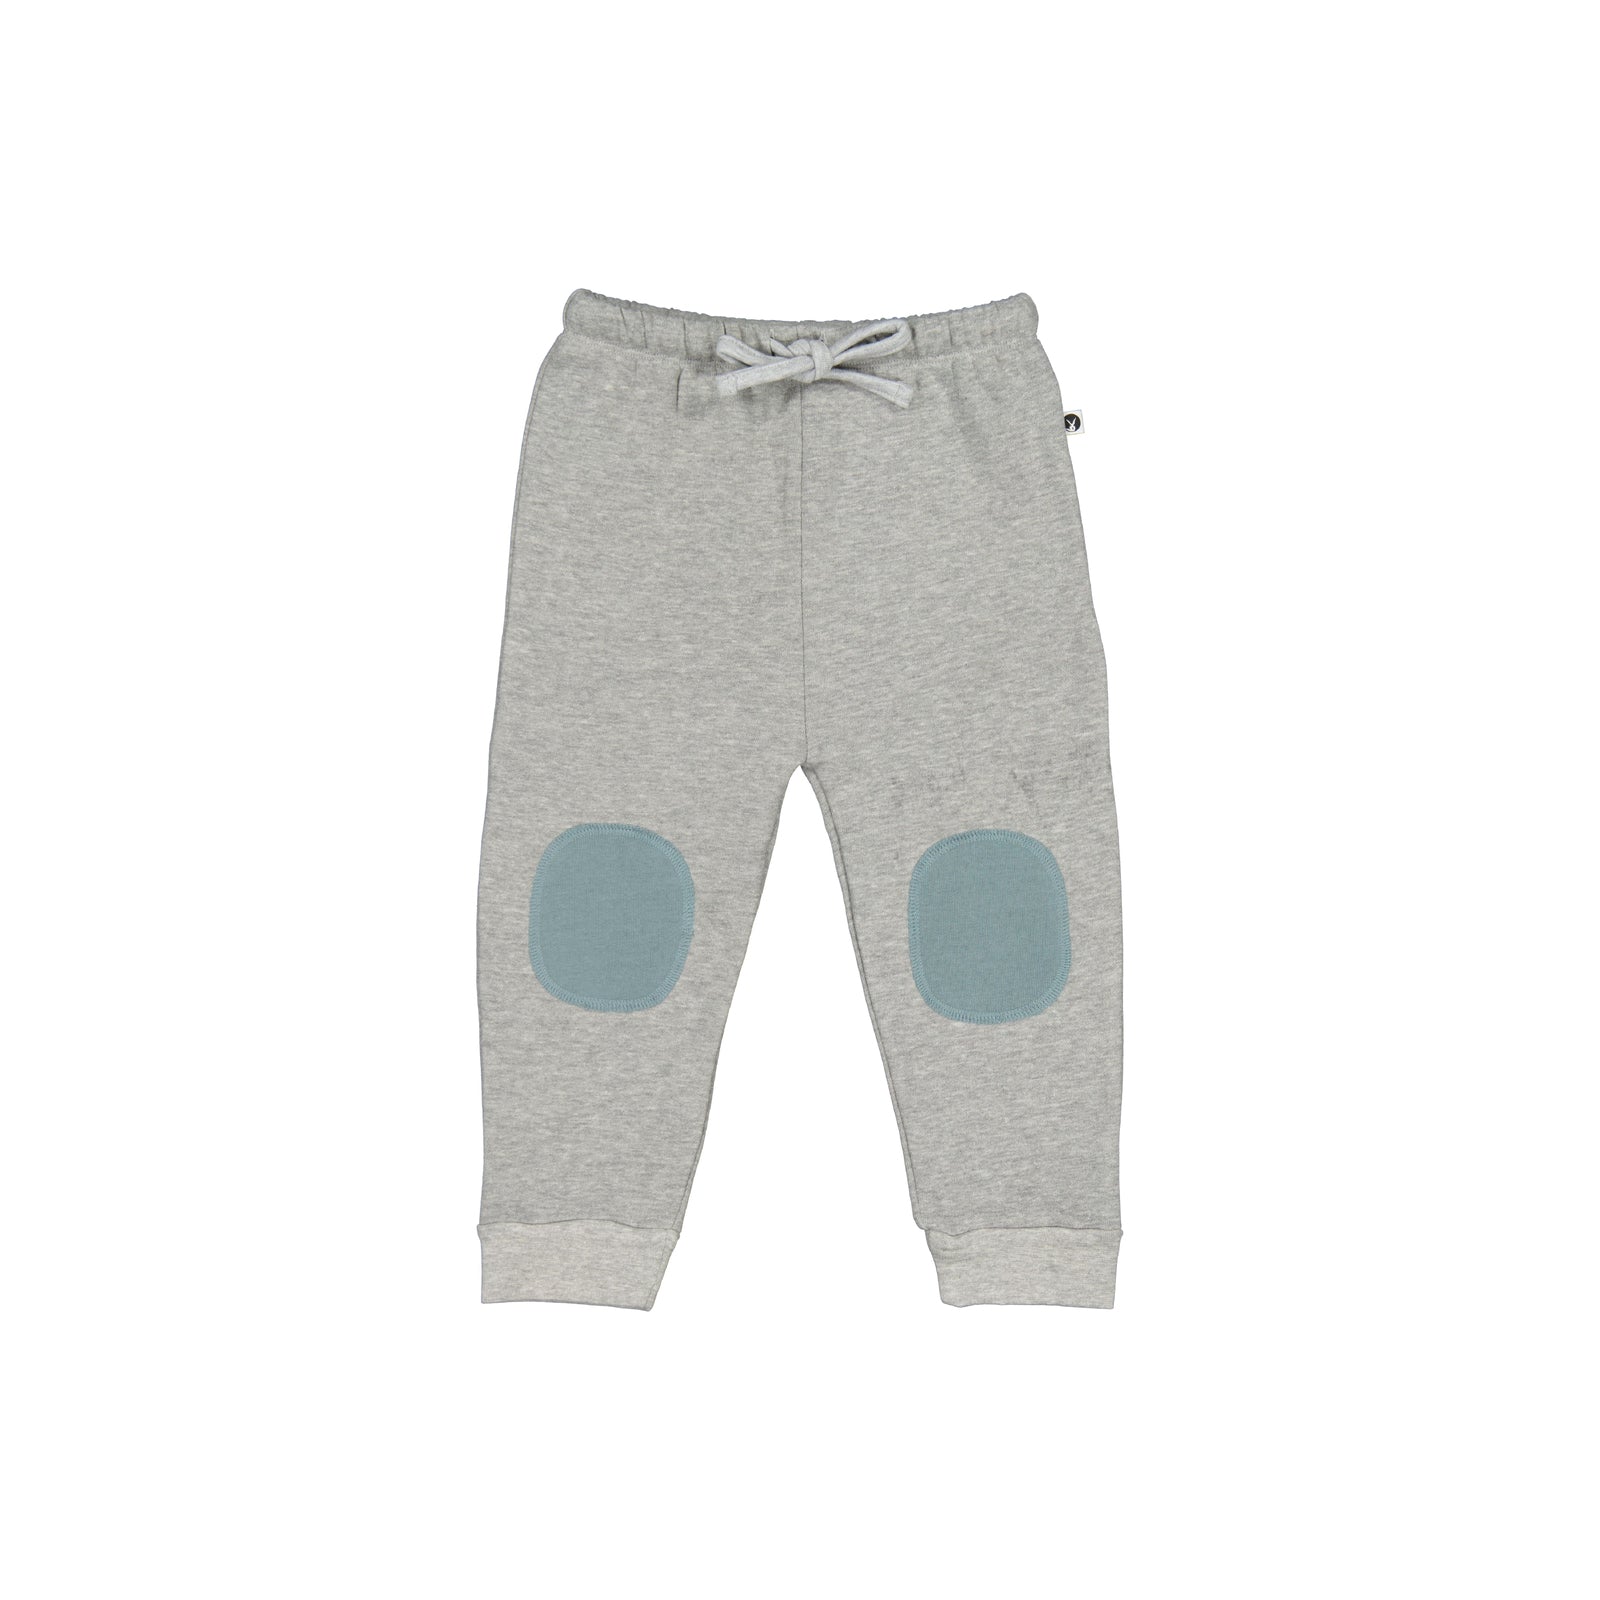 Grey Melange / Storm Track pants